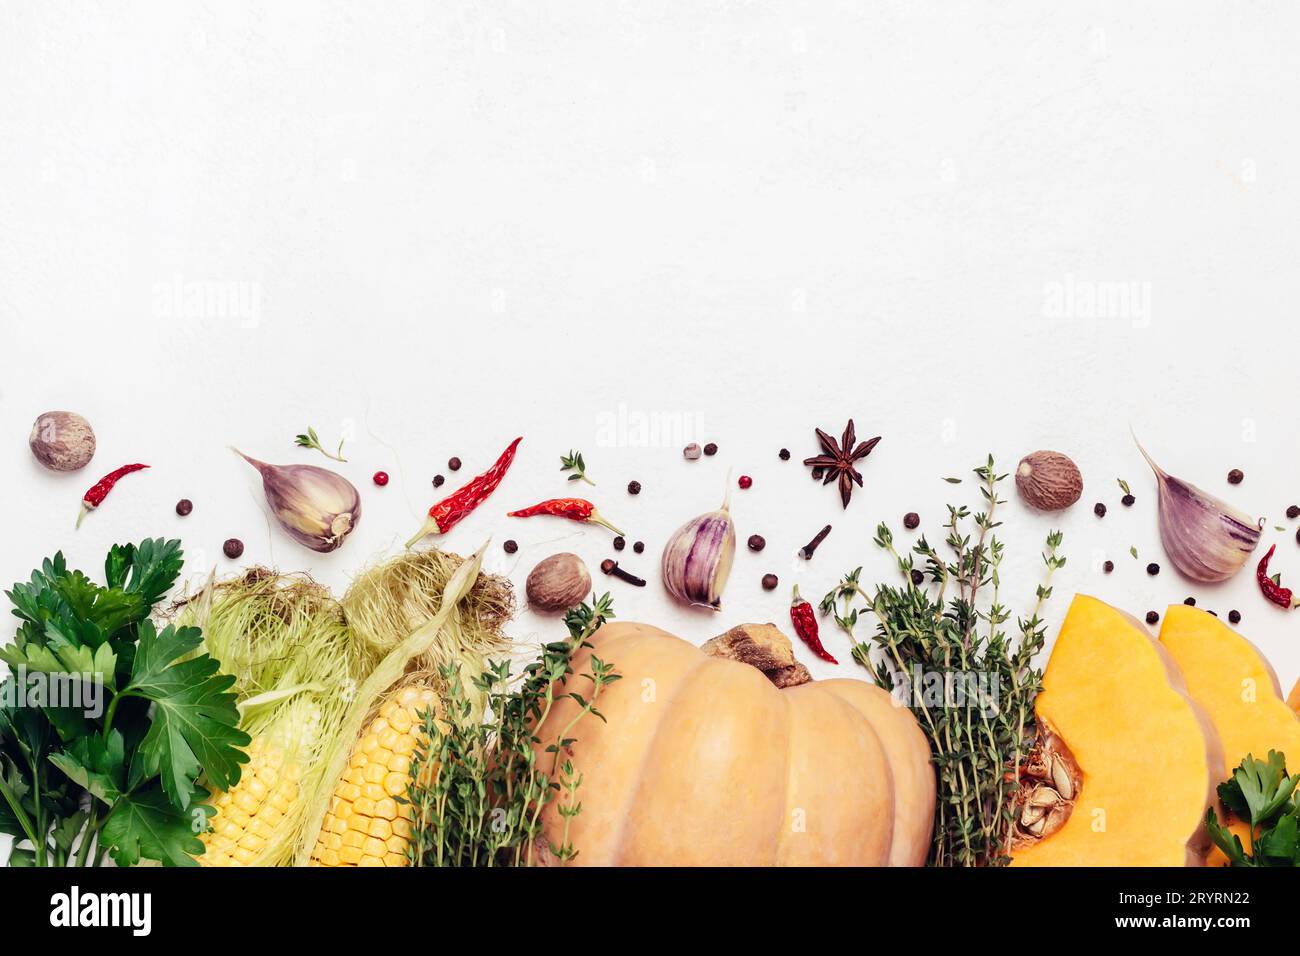 Herbst saisonales Gemüse, Kräuter und Gewürze. Thanksgiving-Food-Konzept Stockfoto